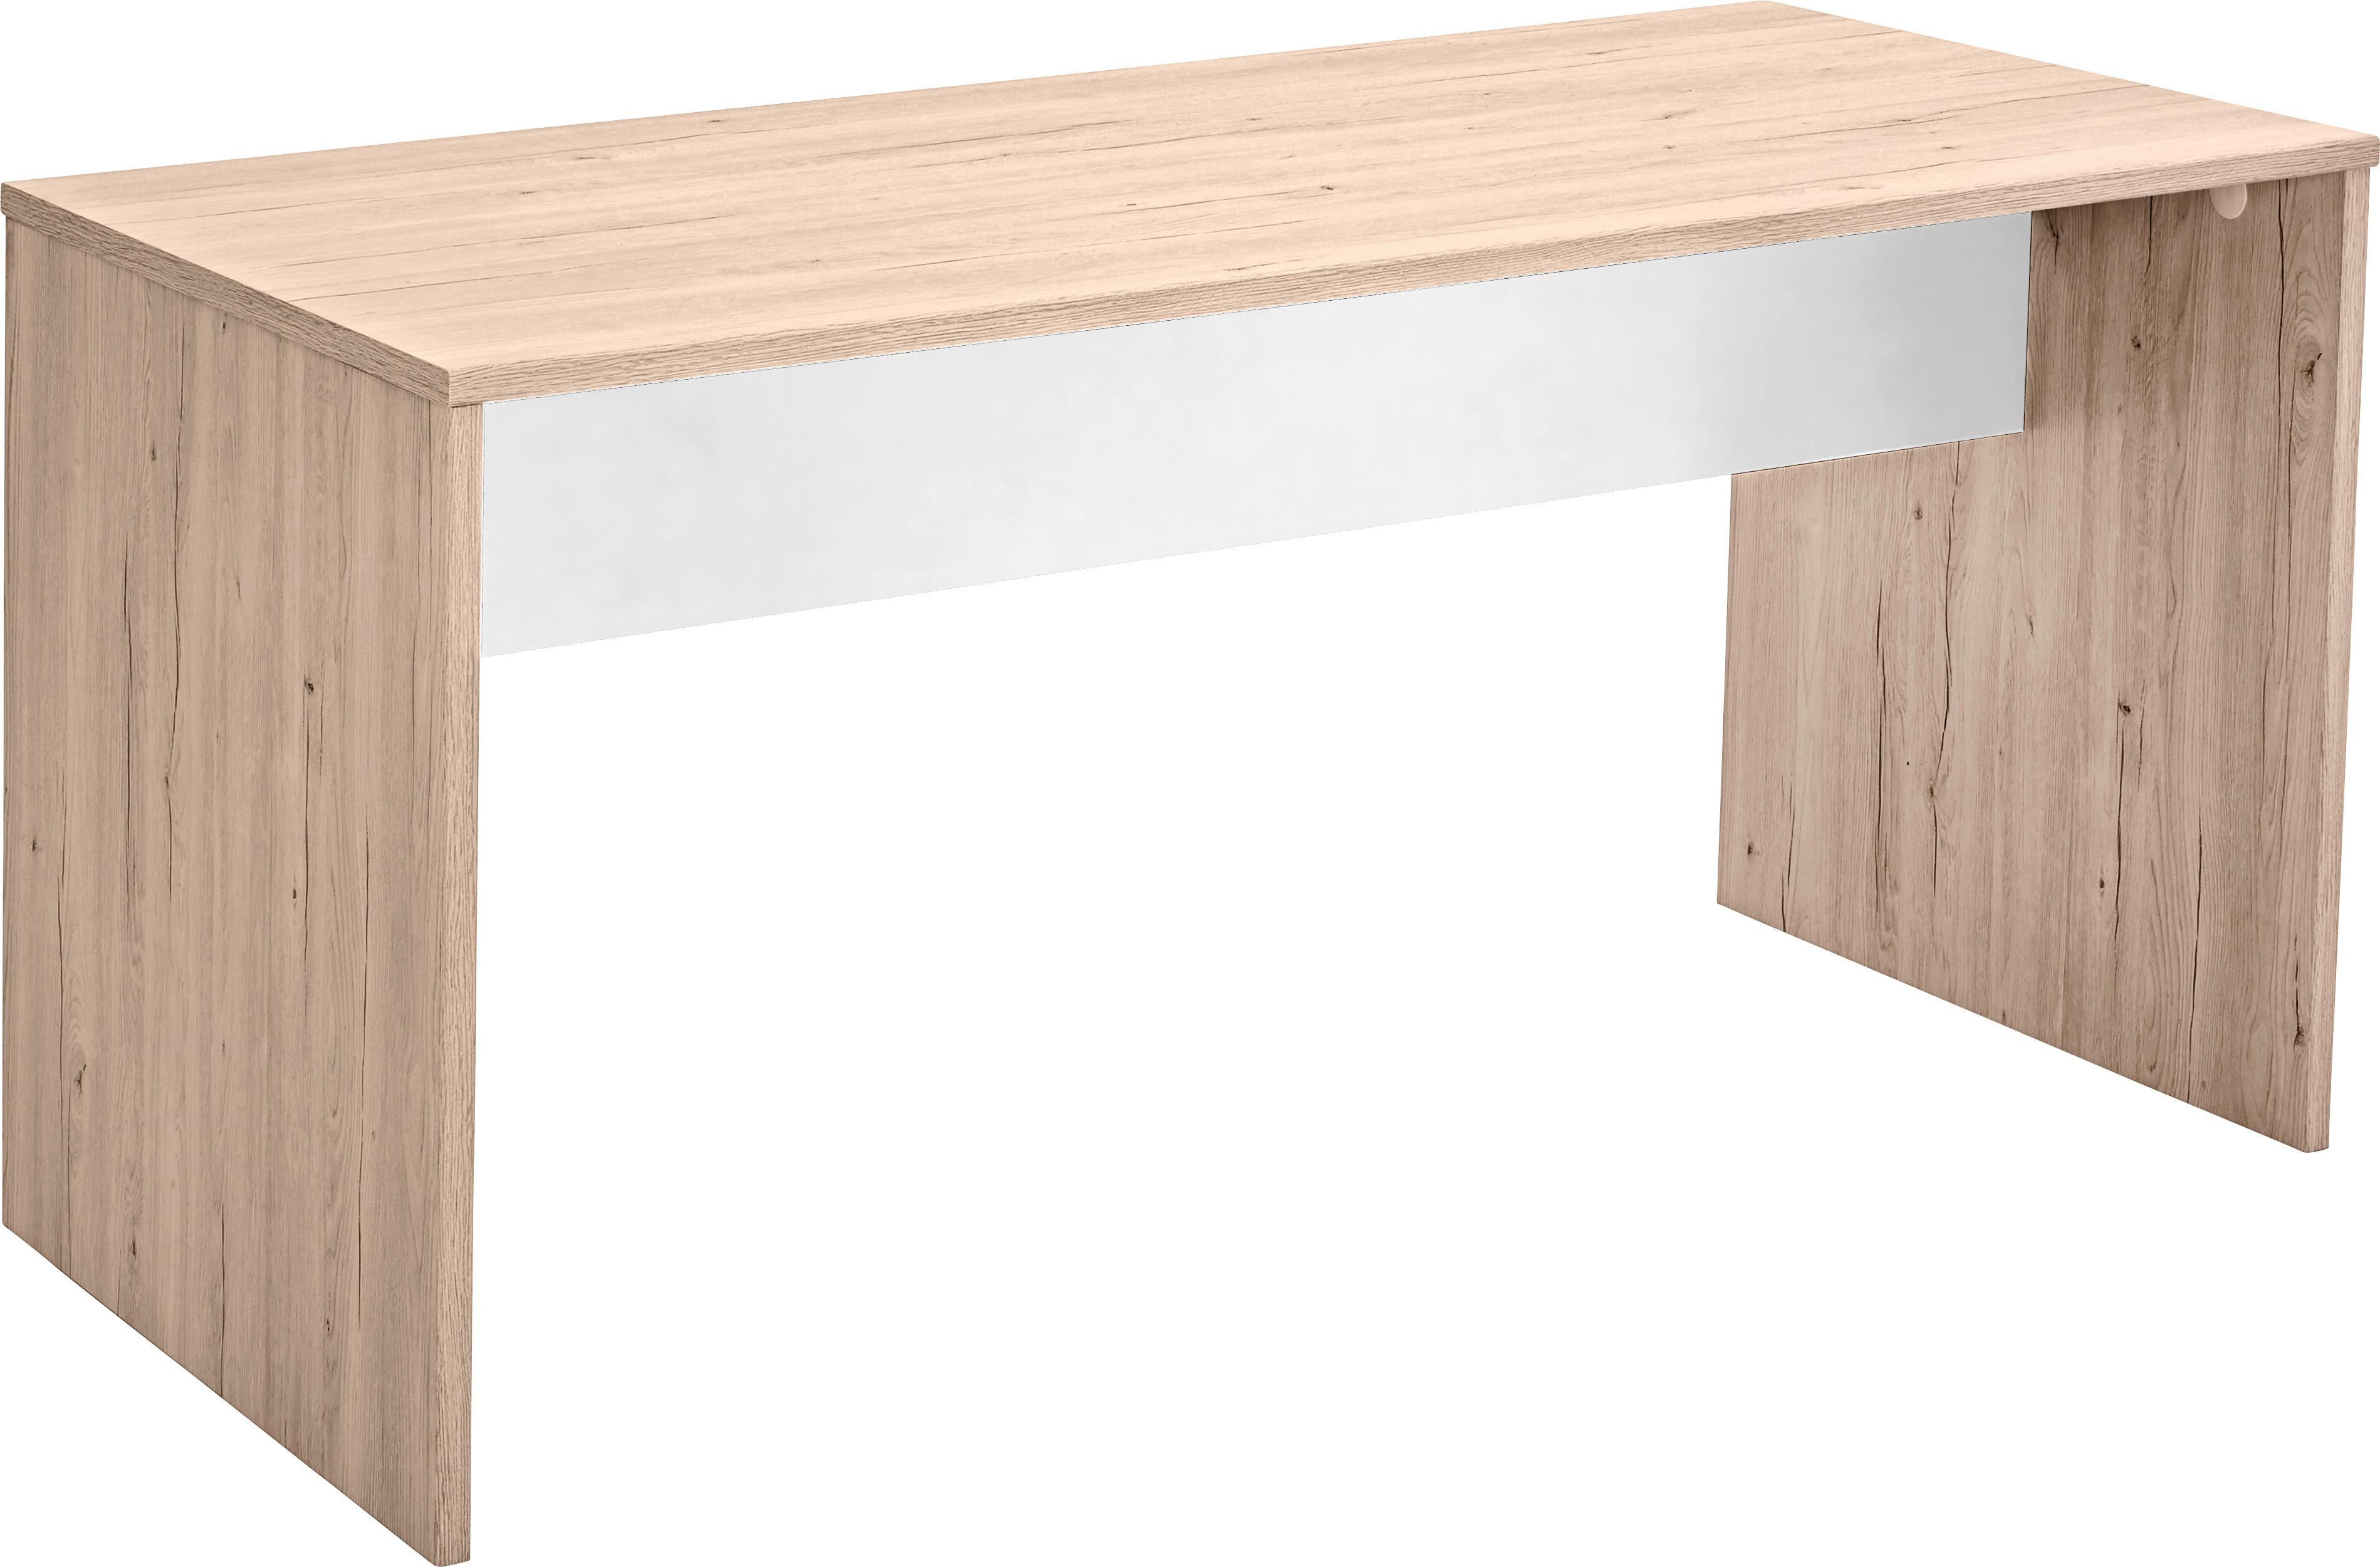 Psací Stůl Cariba Šírka 140cm - bílá/barvy dubu, Design, kompozitní dřevo (140/72/70cm) - MID.YOU